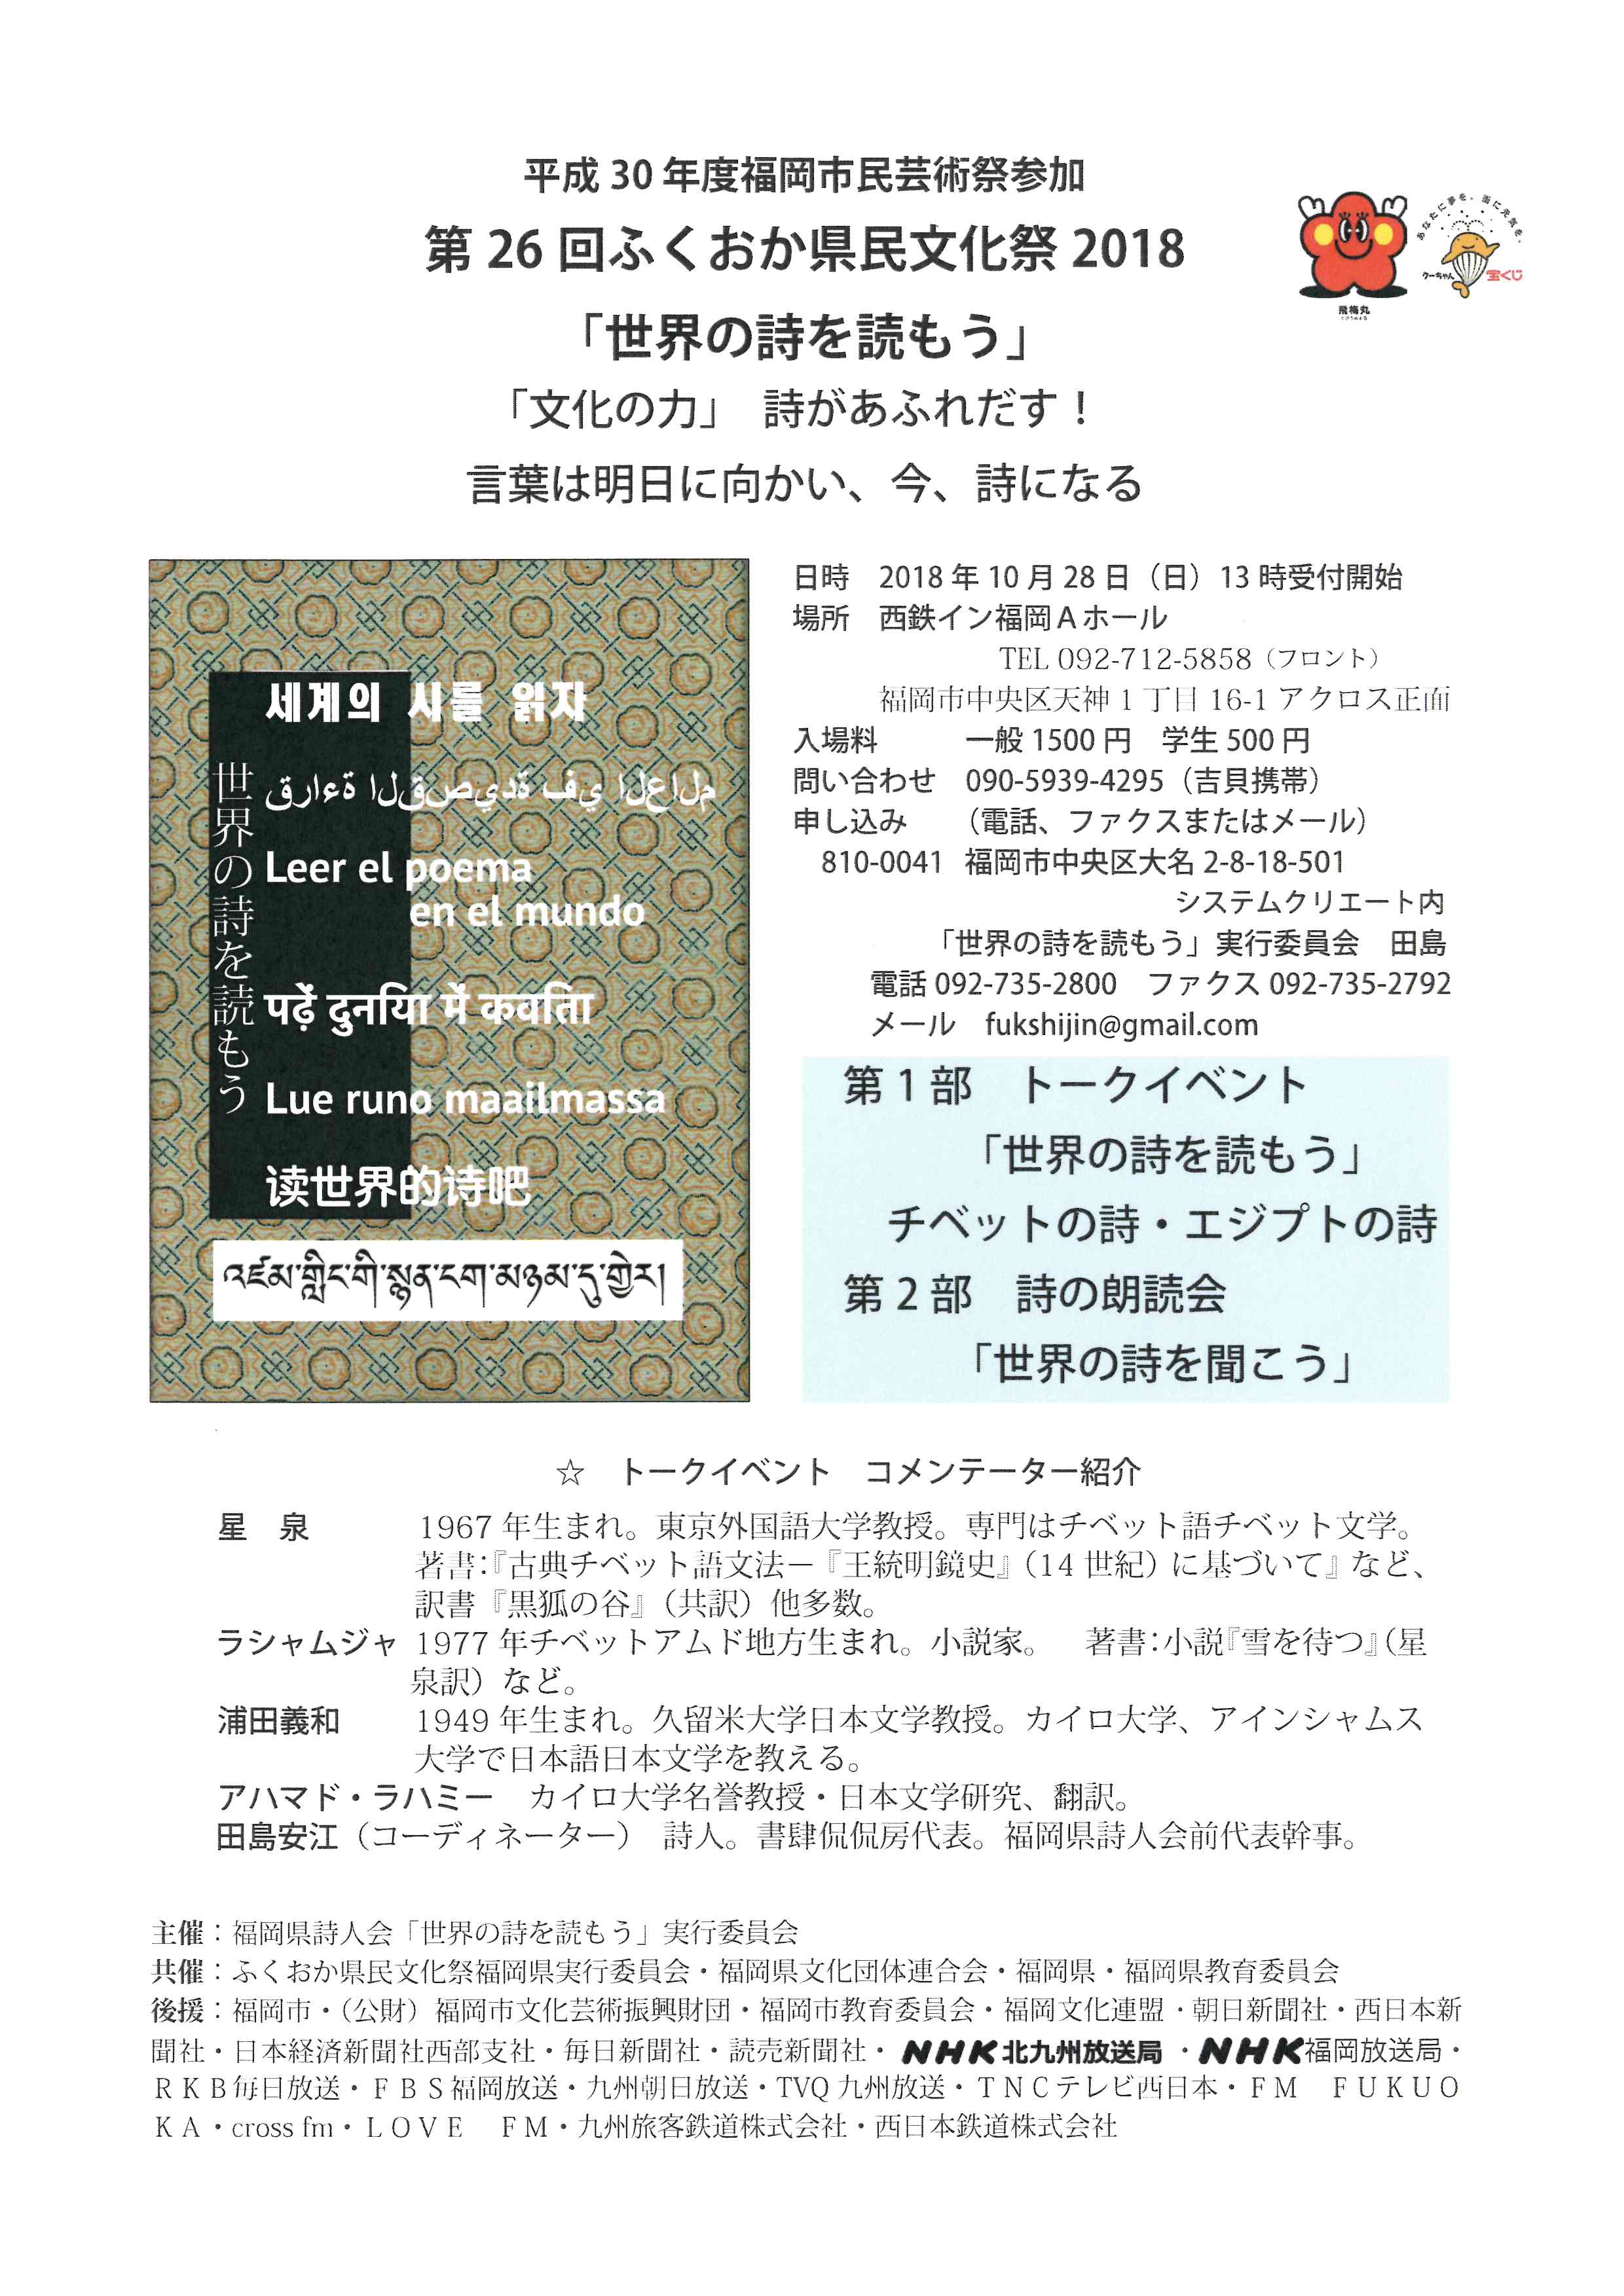 第26回ふくおか県民文化祭18 世界の詩を読もう イベント情報 福岡県文化団体連合会